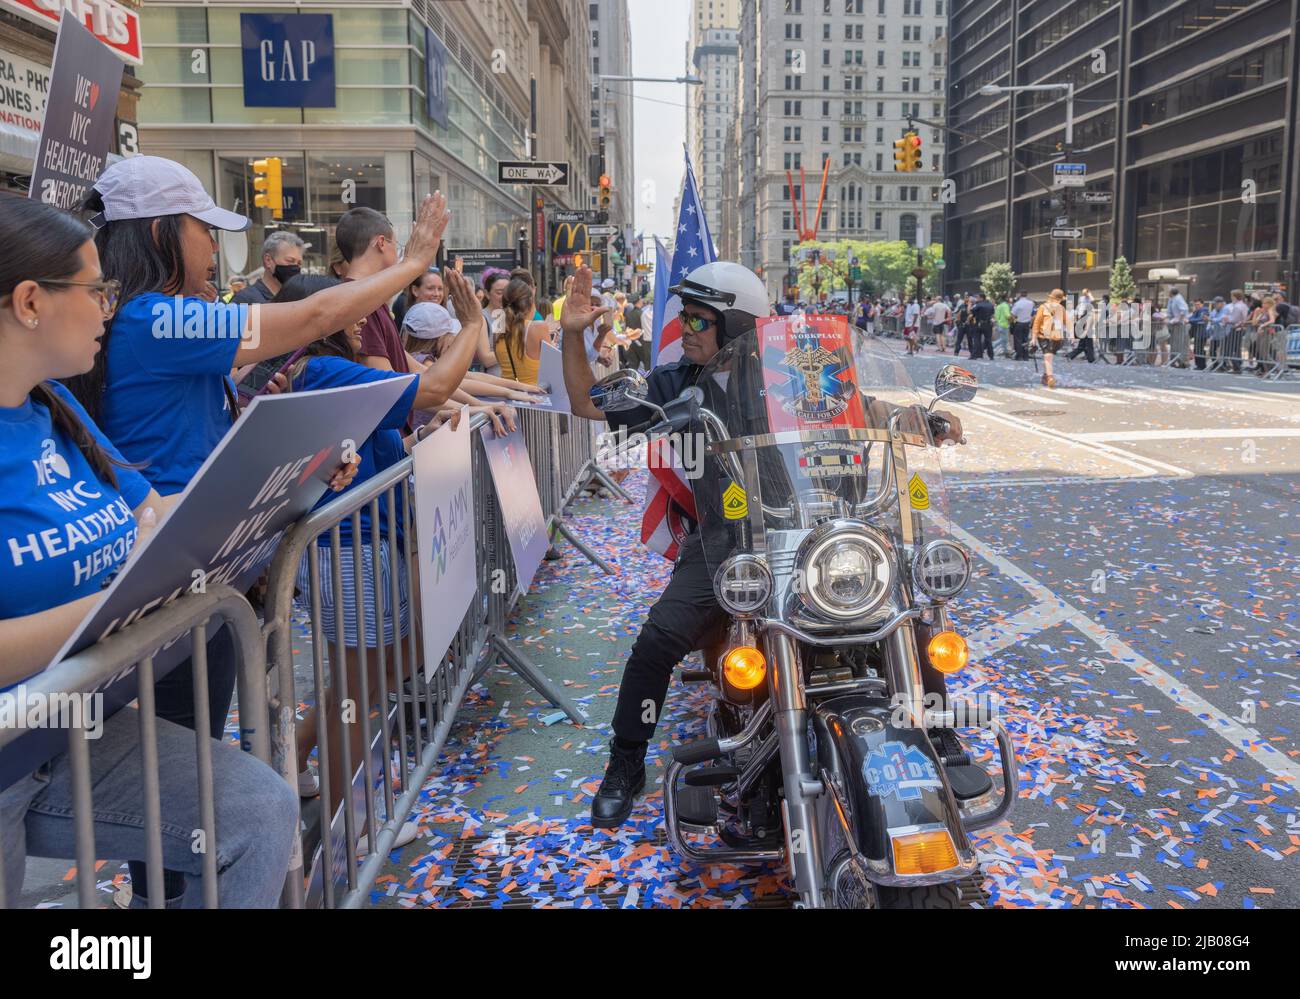 NUEVA YORK, N.Y. – 7 de julio de 2021: Una enfermera educadora monta una motocicleta y saluda a los espectadores durante el desfile de cintas de los Héroes de Hometown en la ciudad de Nueva York. Foto de stock